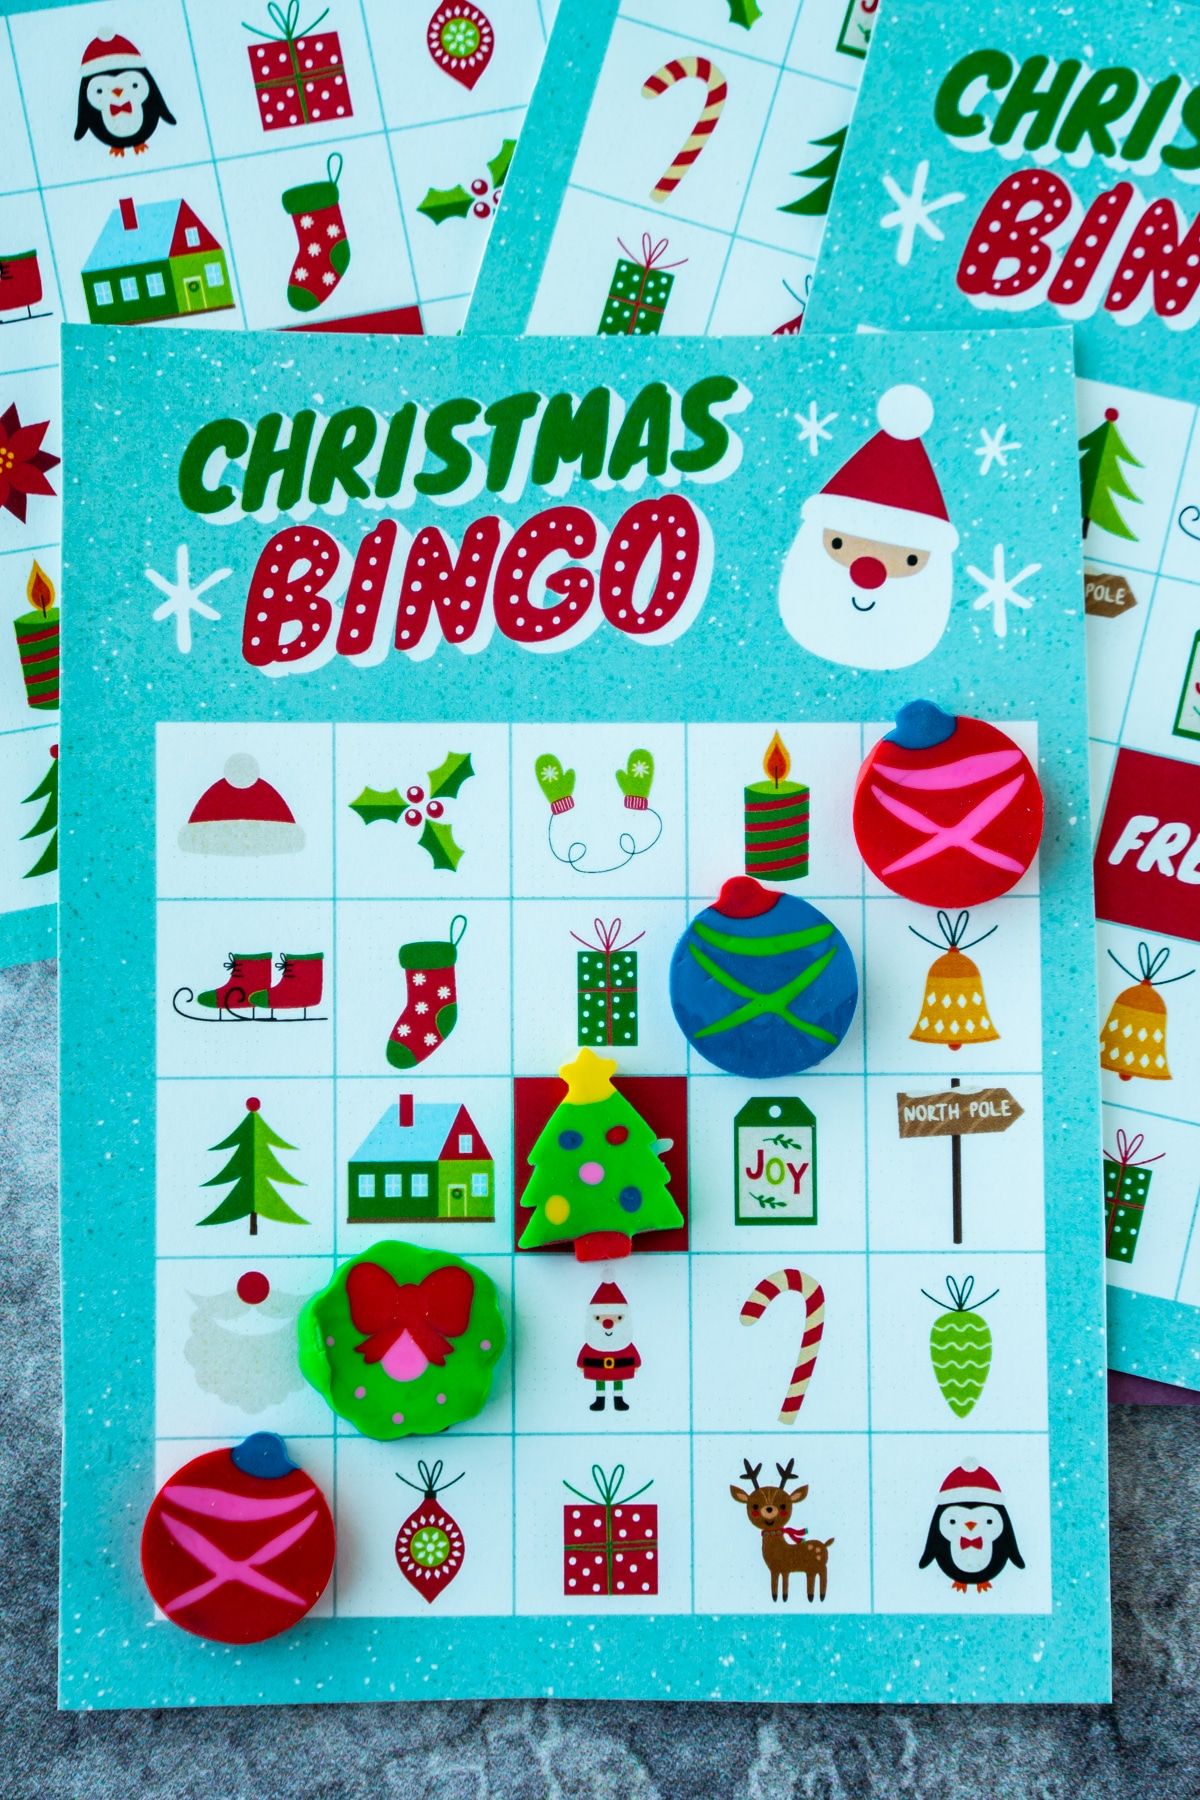 Targeta de bingo de Nadal amb gomes d